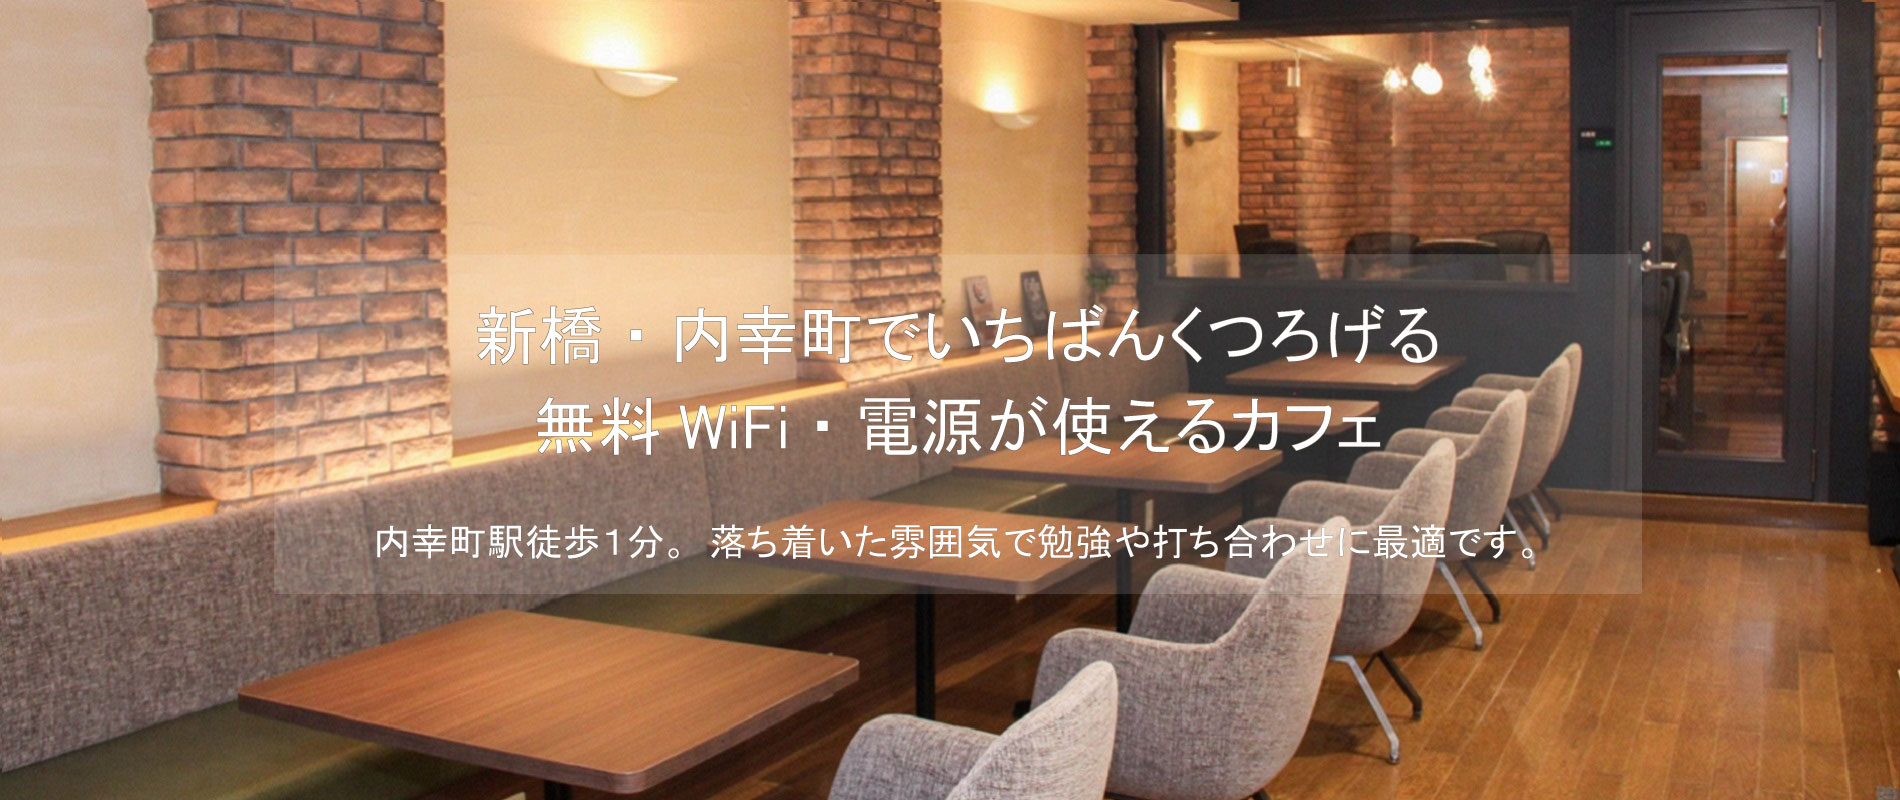 新橋・内幸町でいちばんくつろげる無料WiFi・電源が使えるカフェ